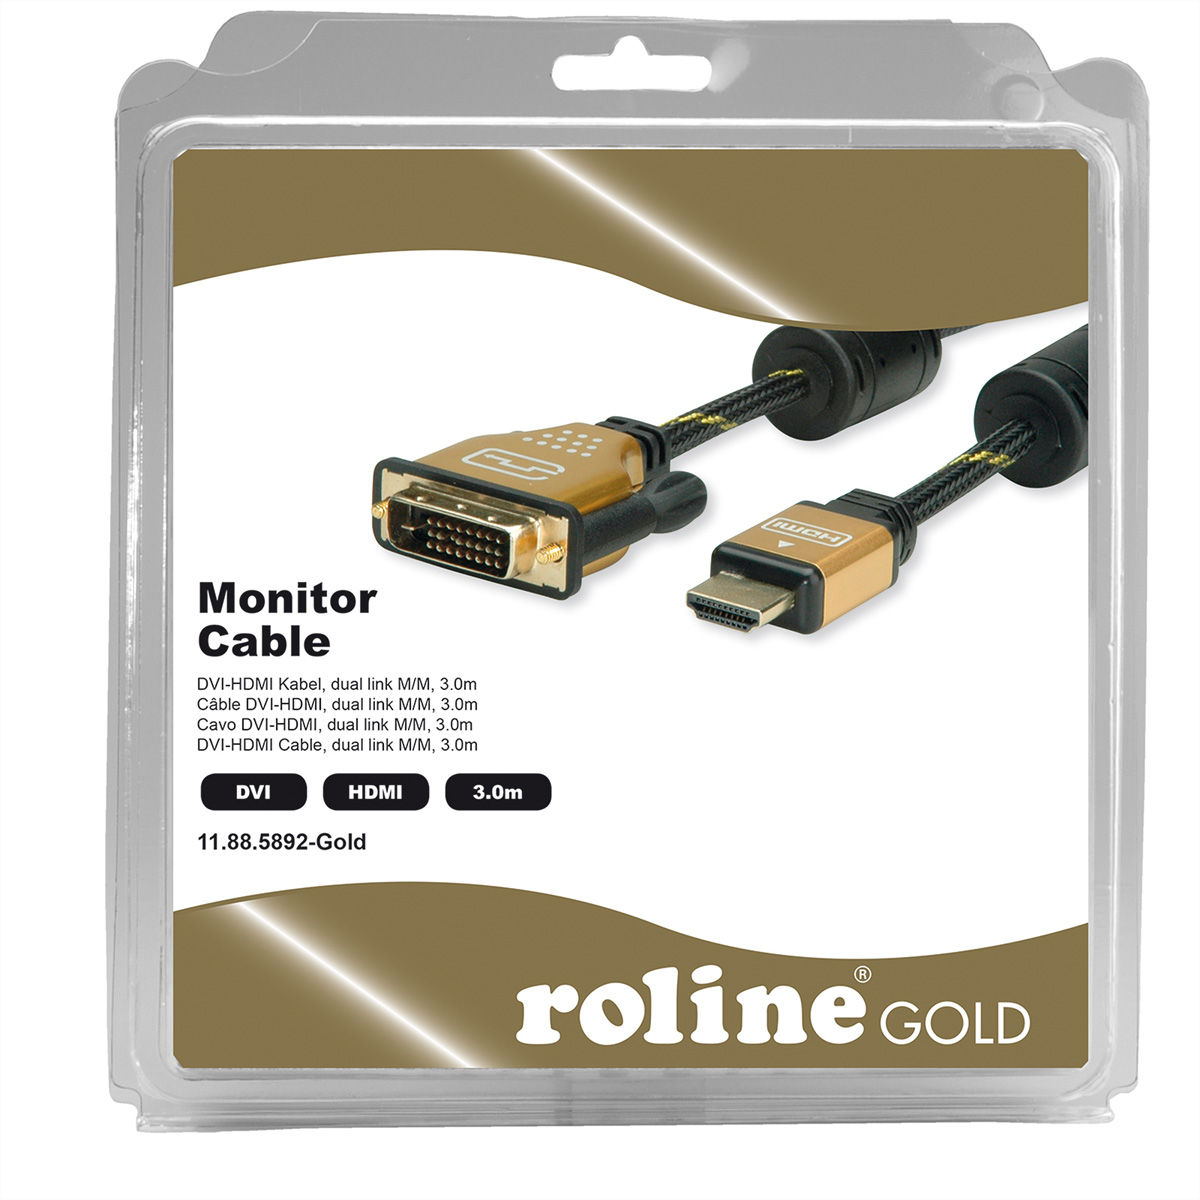 (24+1) Monitorkabel 3 ST-ST, HDMI-DVI-Kabel, ROLINE dual link, DVI-HDMI, m GOLD